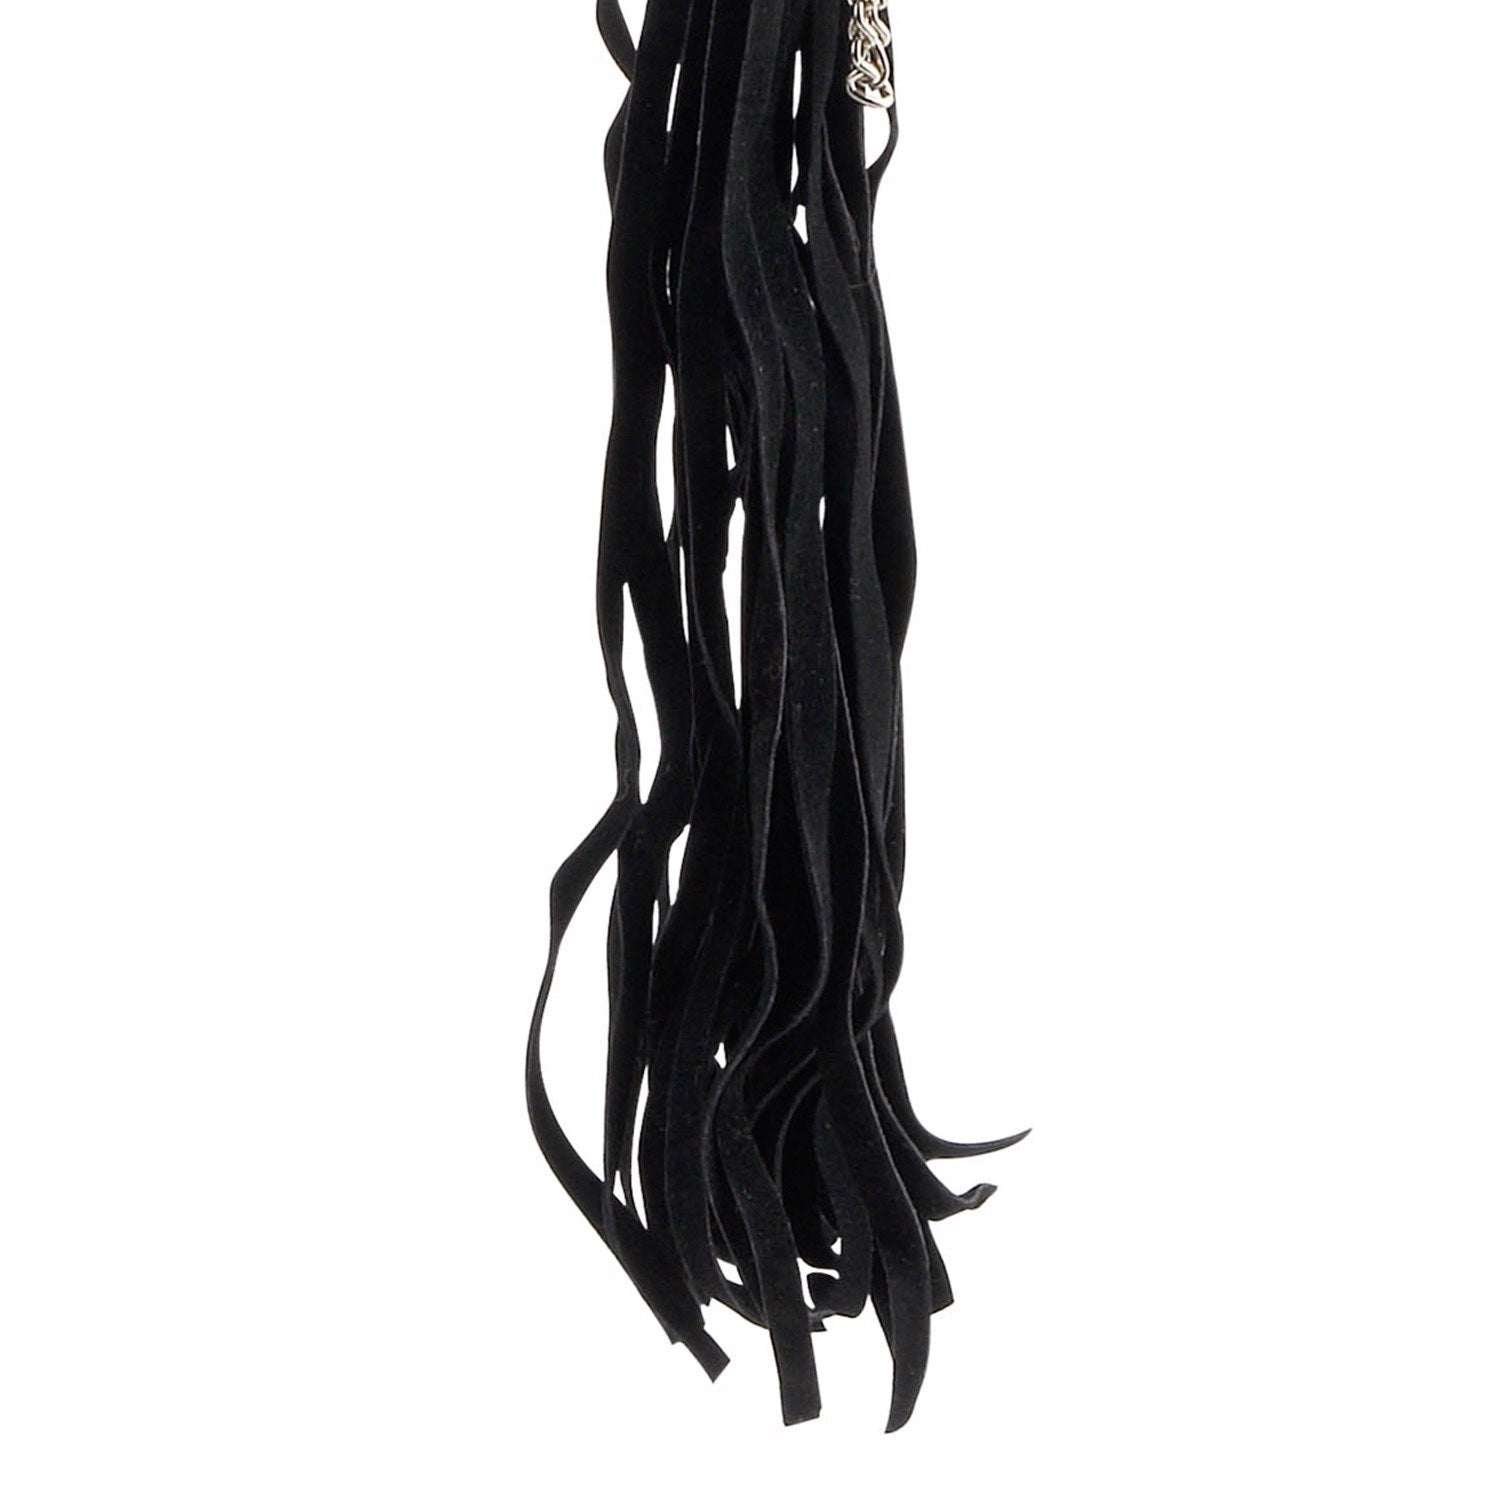  串珠金属鞭打者 - 黑色 60 厘米鞭子 by Pipedream